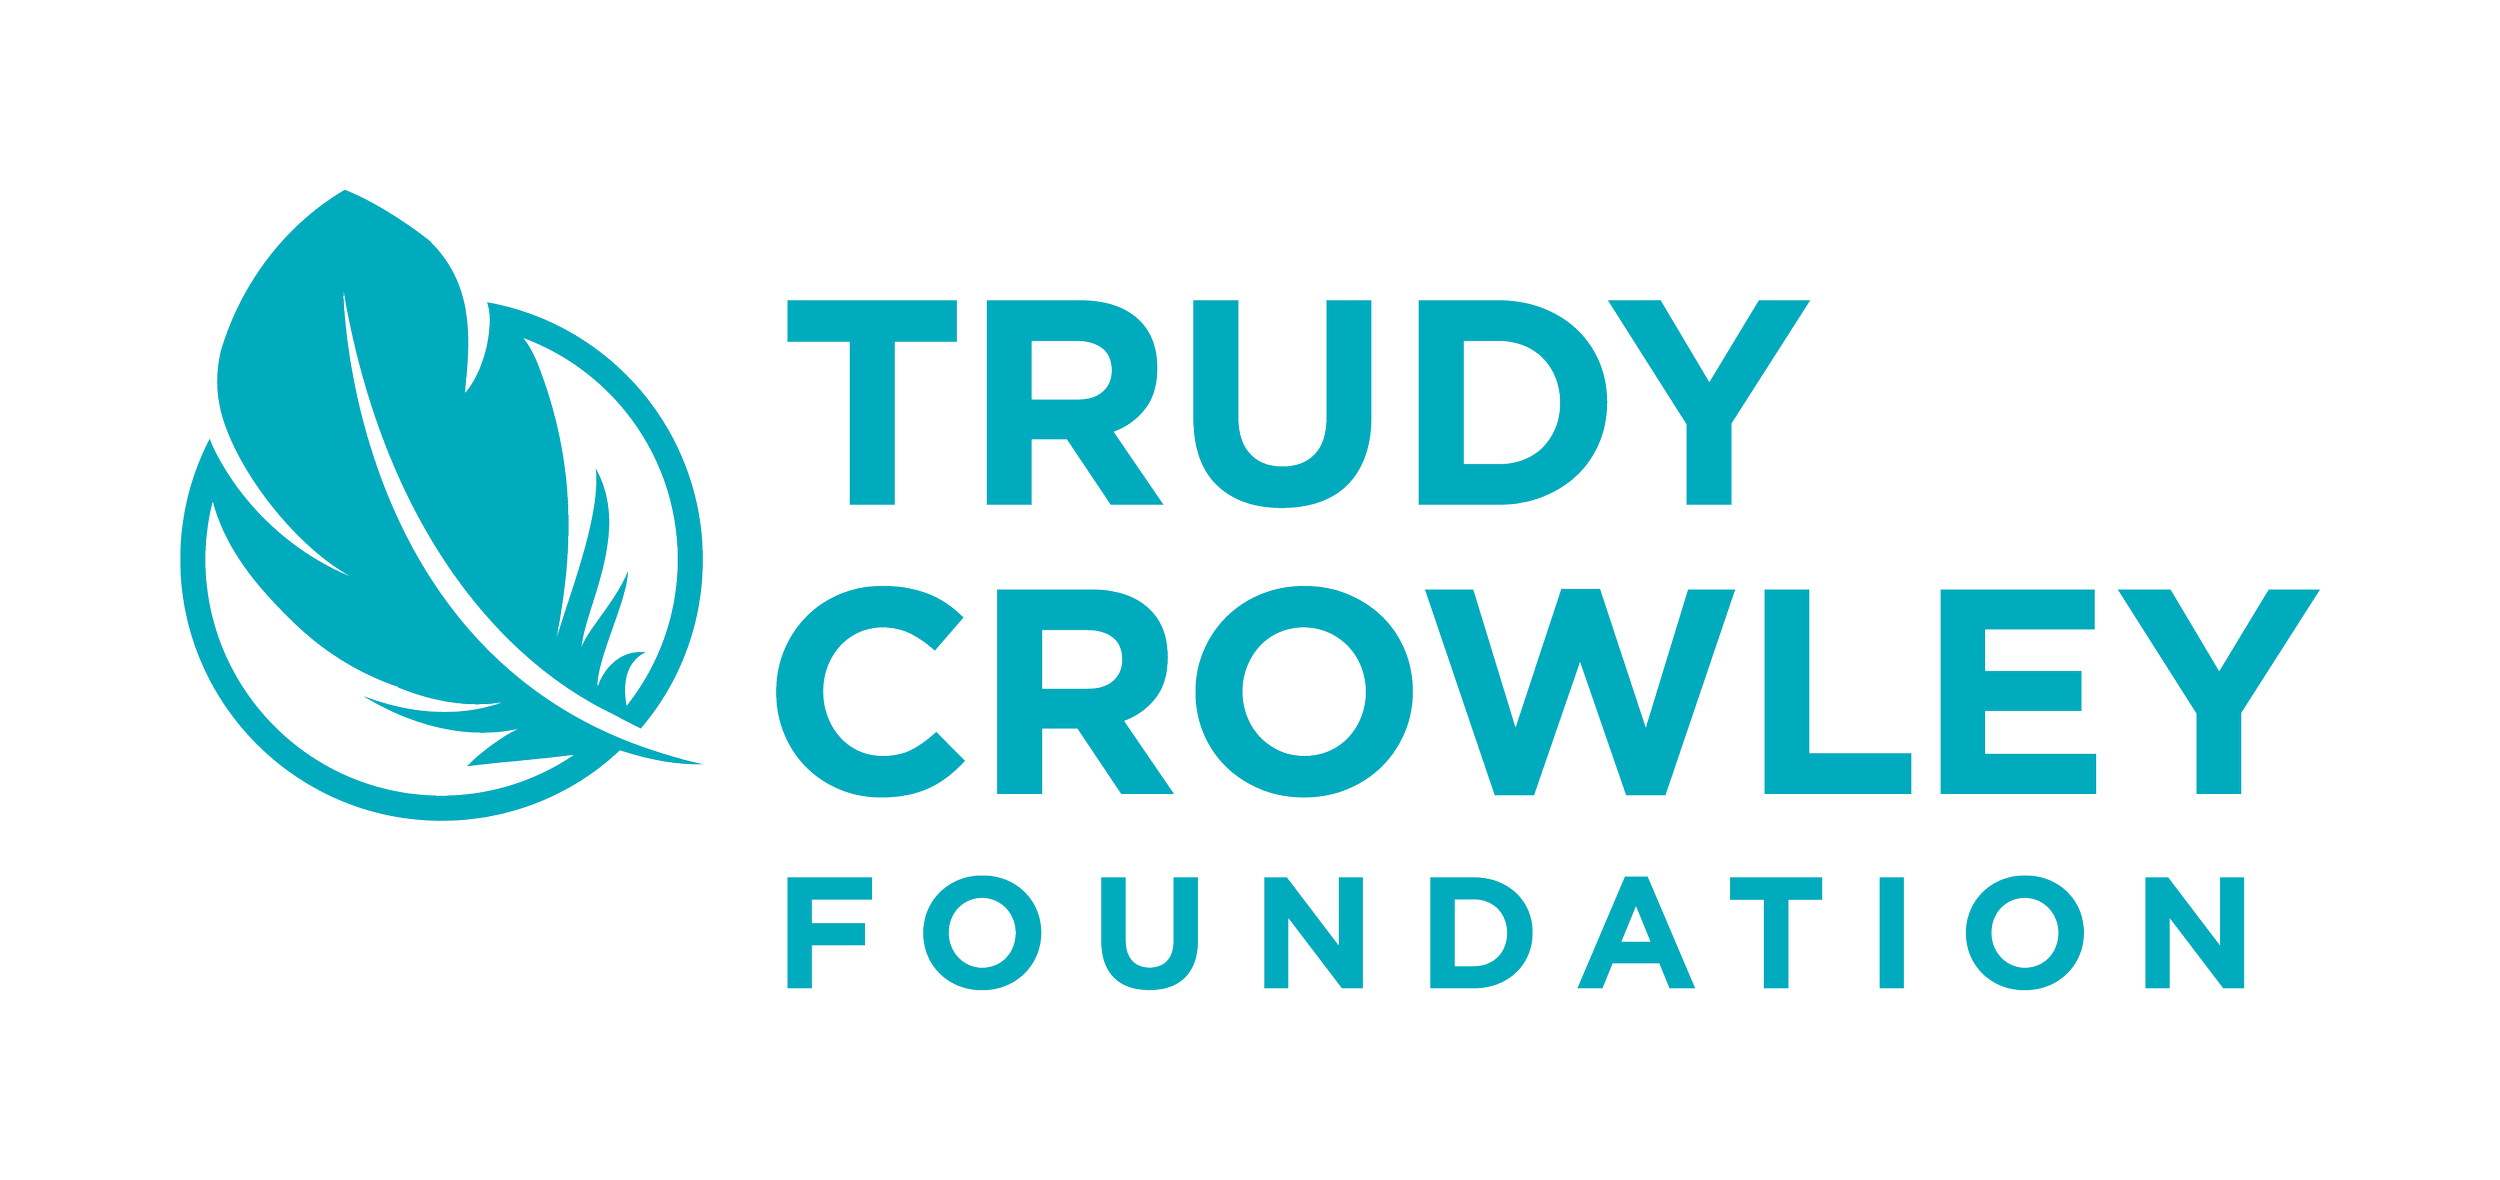 Trudy Crowley Foundation